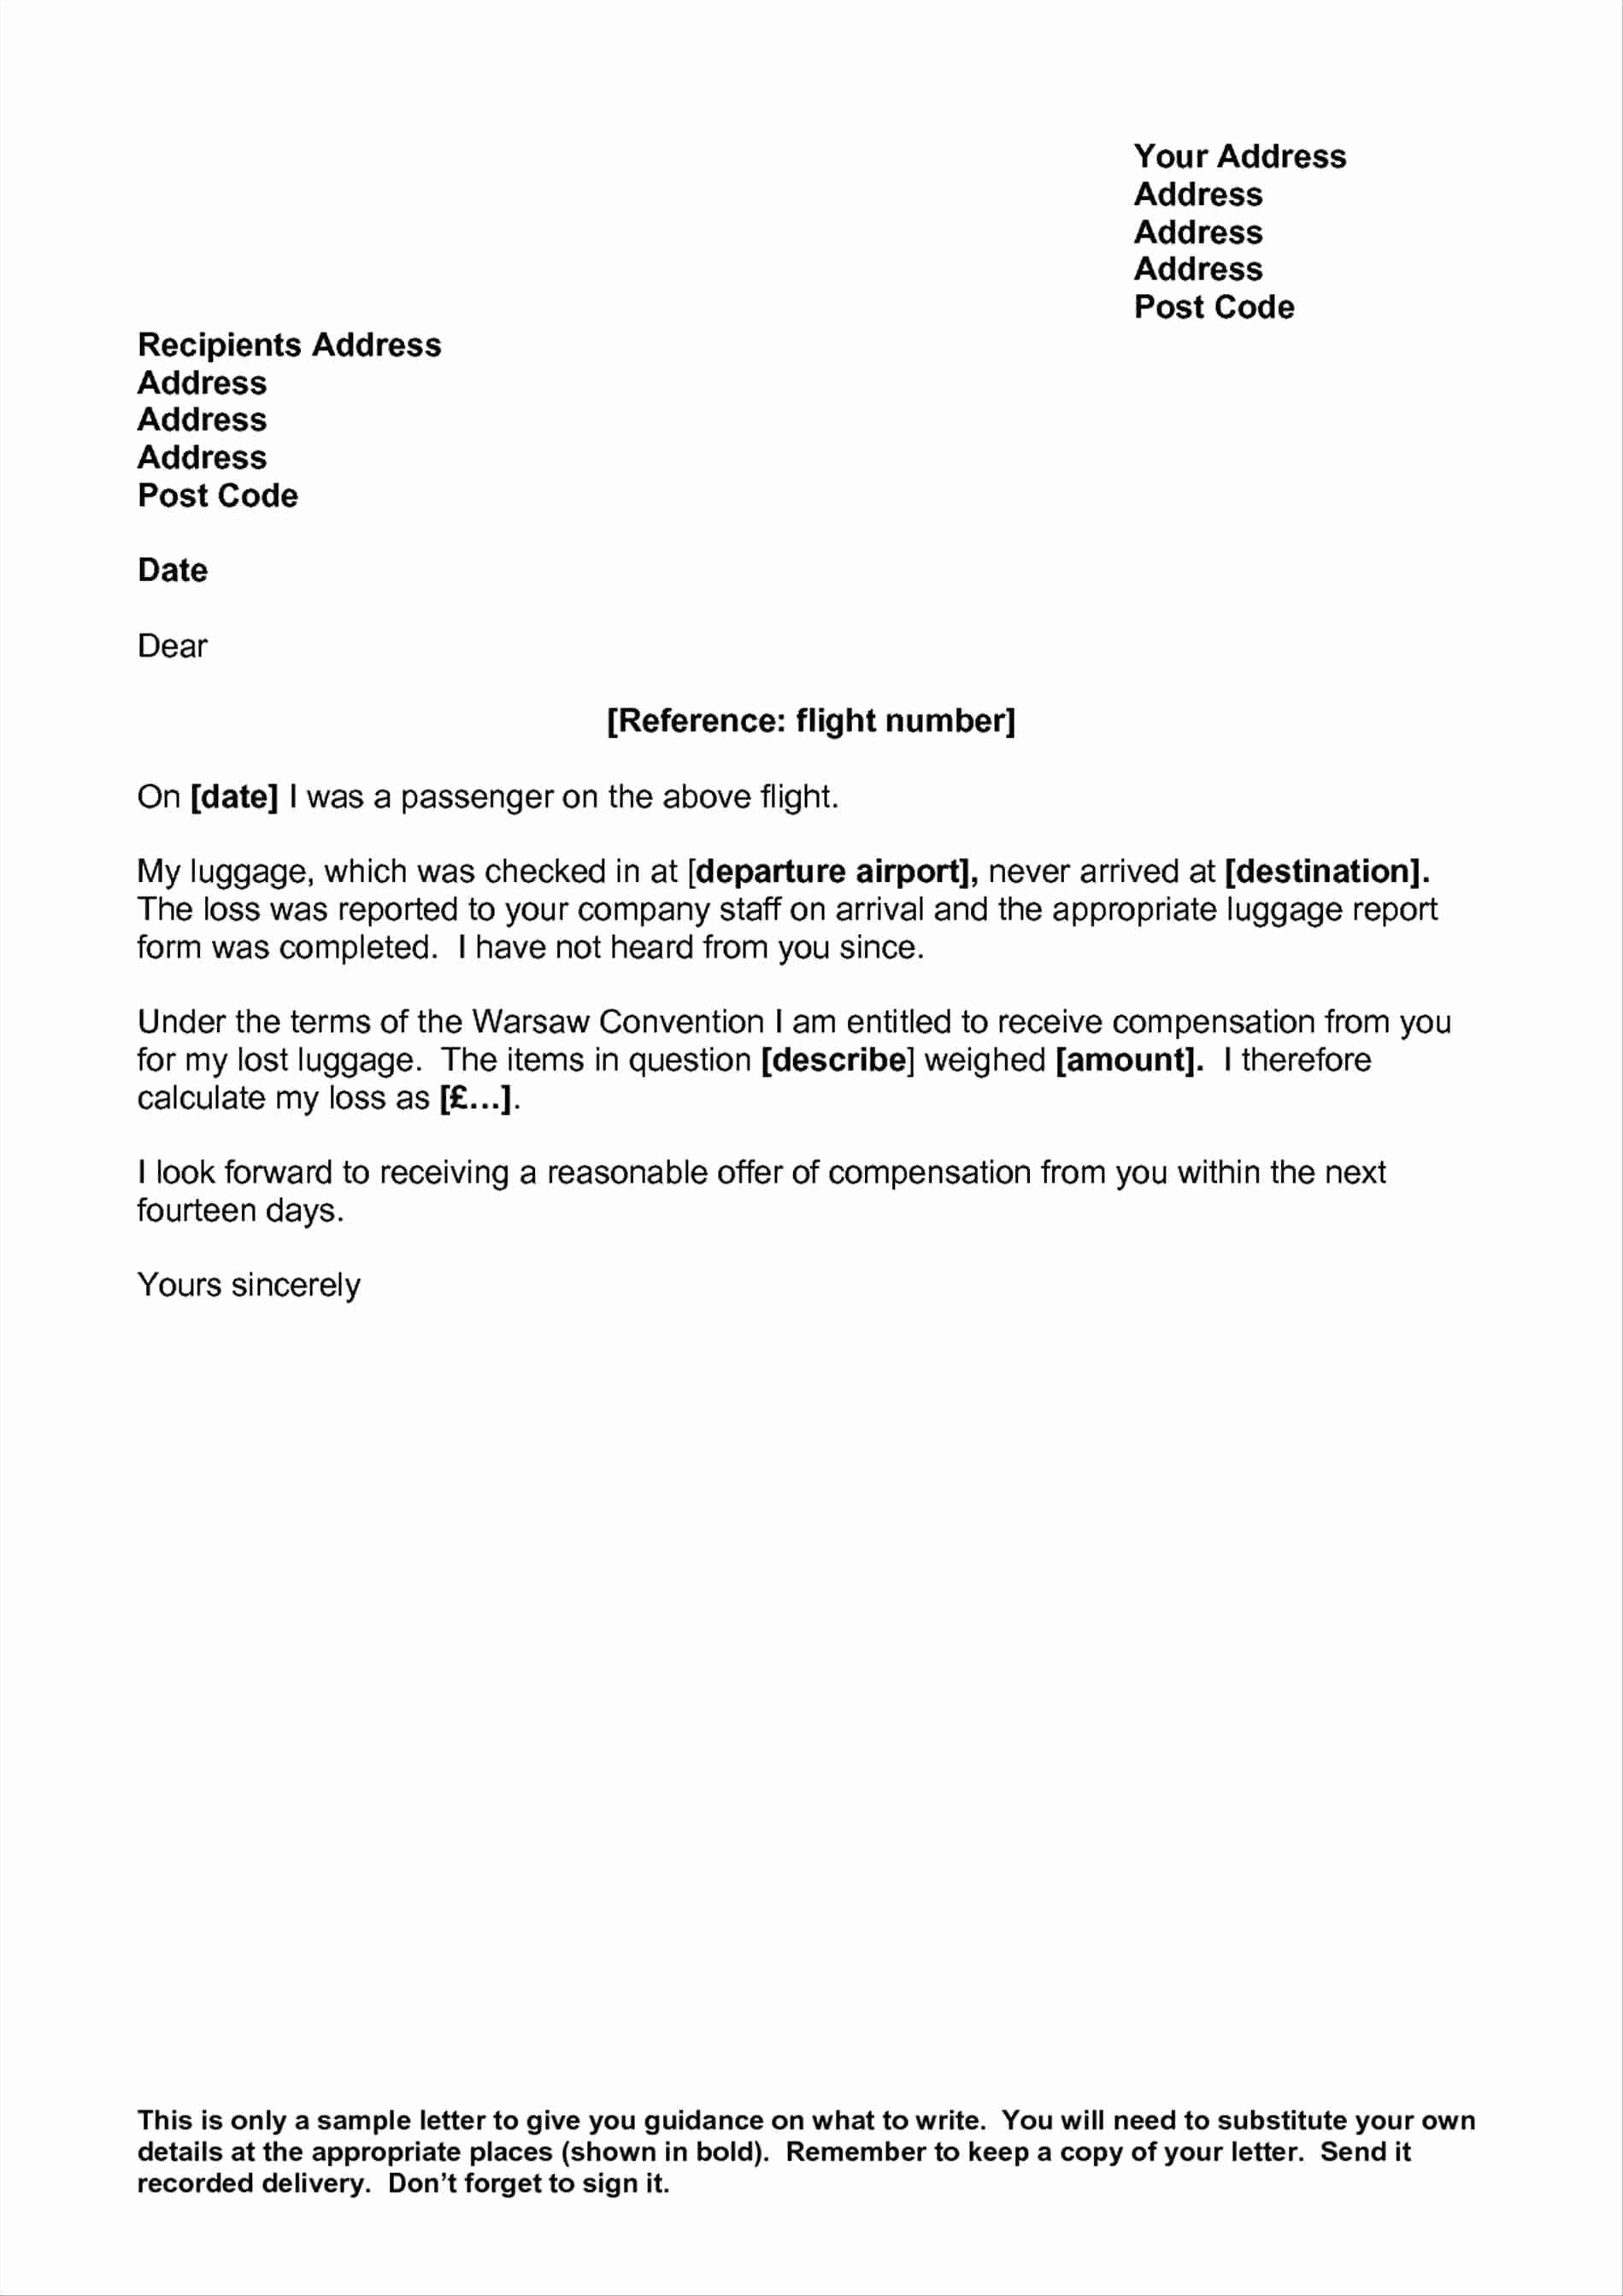 Claim Denial Letter Sample Airline Fresh Flight Delay Pensation Letter Template Samples